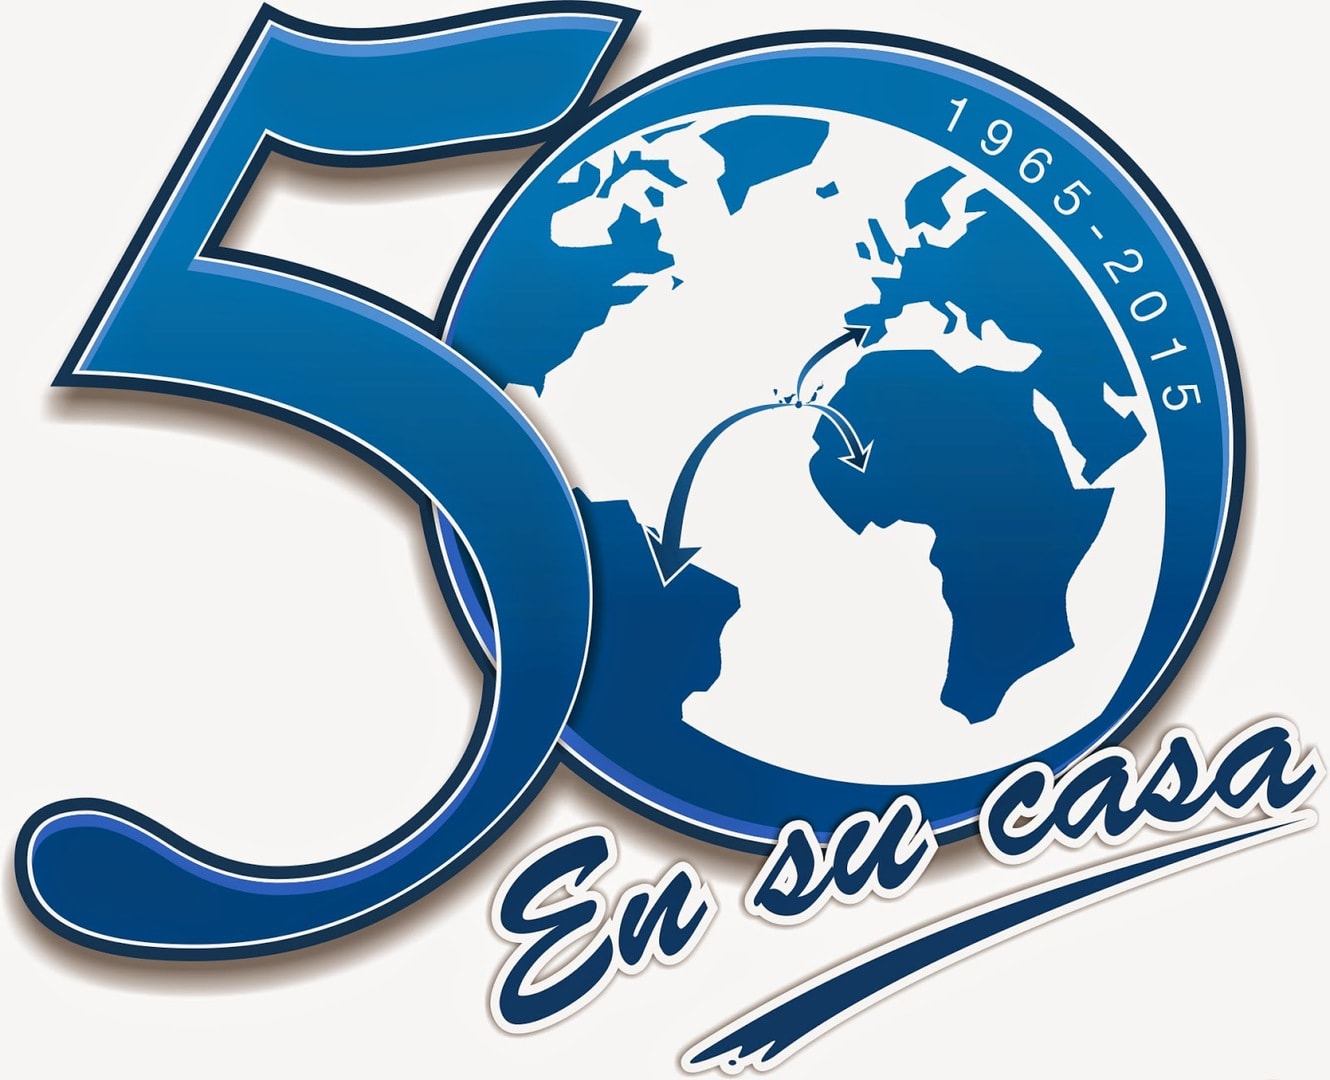 Radio Ecca, 50 años emitiendo en Canarias y más de 30 en Granadilla de Abona (I)